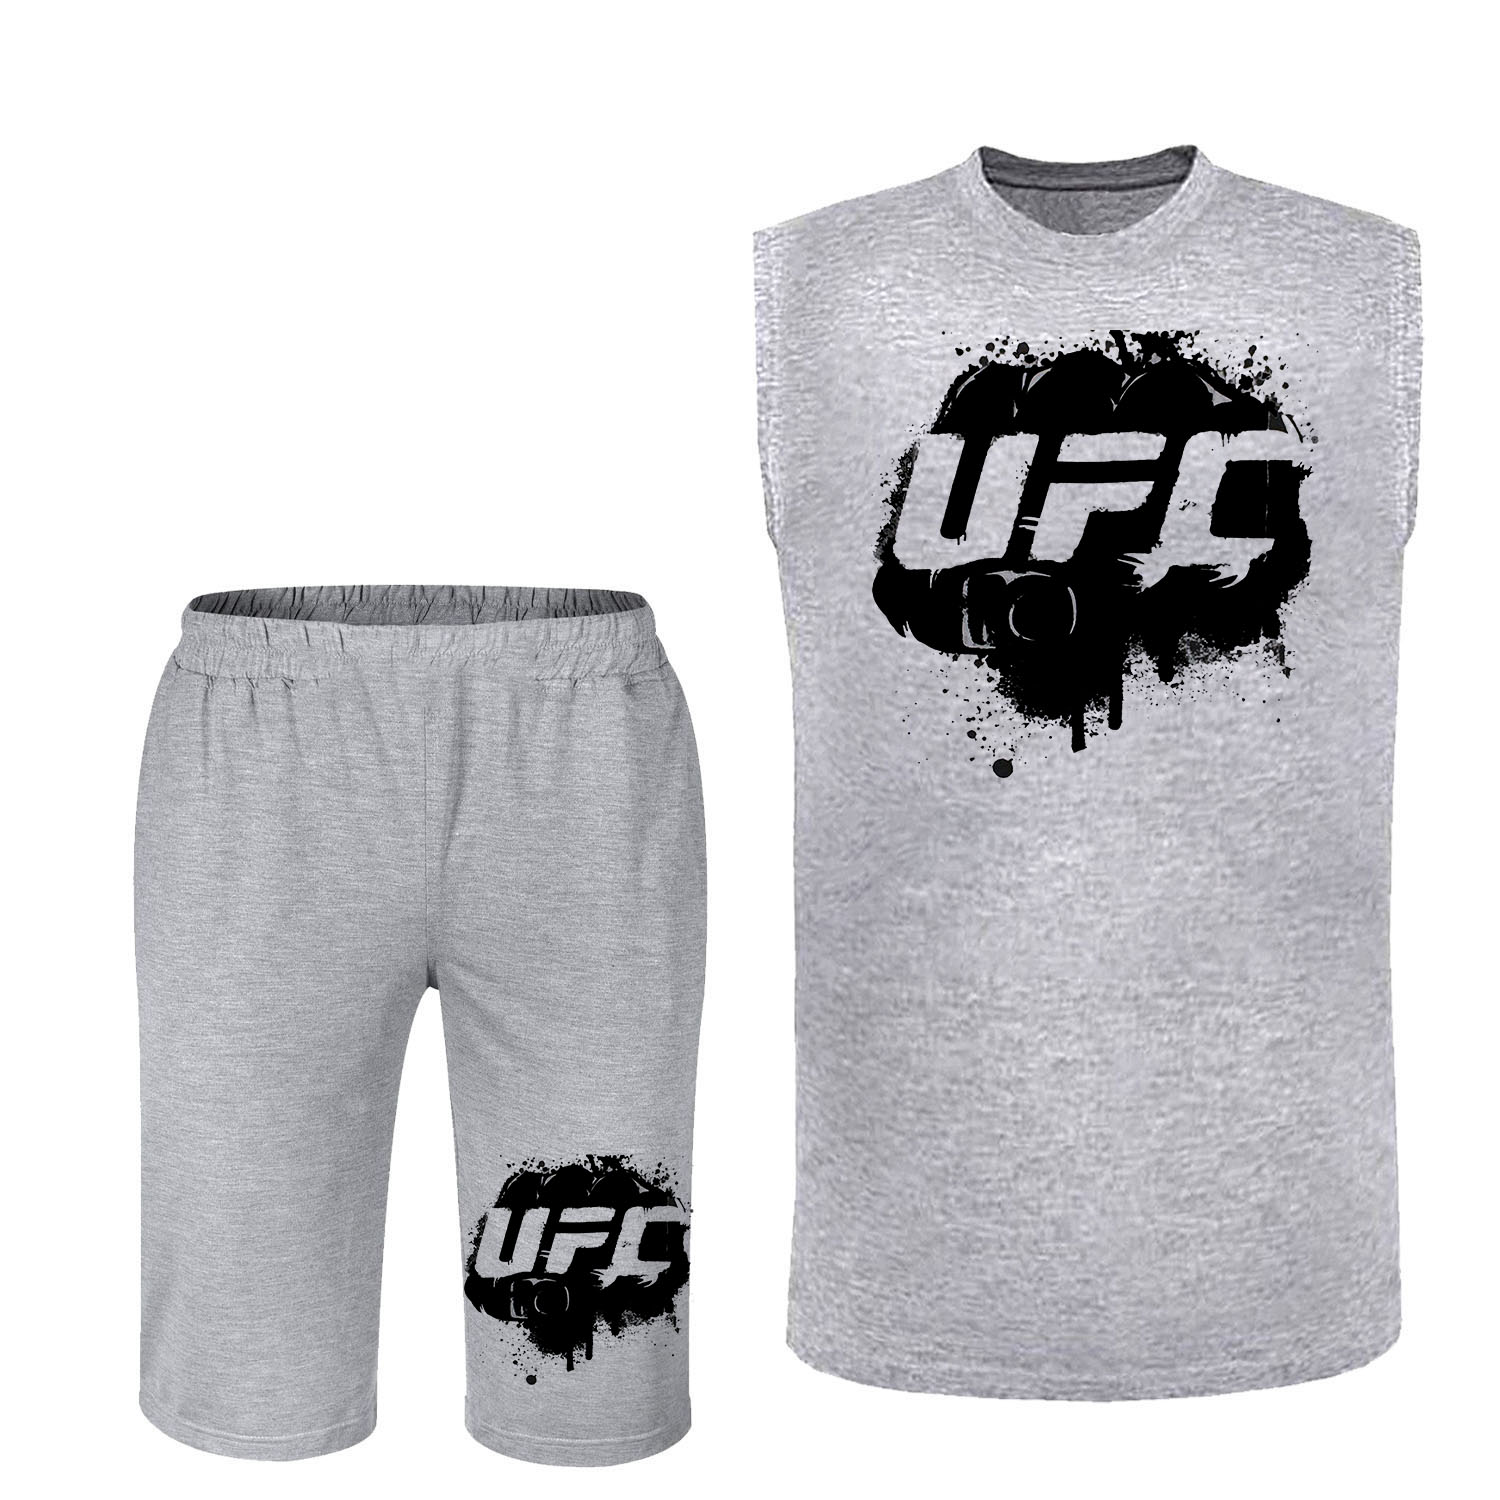 ست تاپ و شلوارک مردانه مدل UFC کد F197